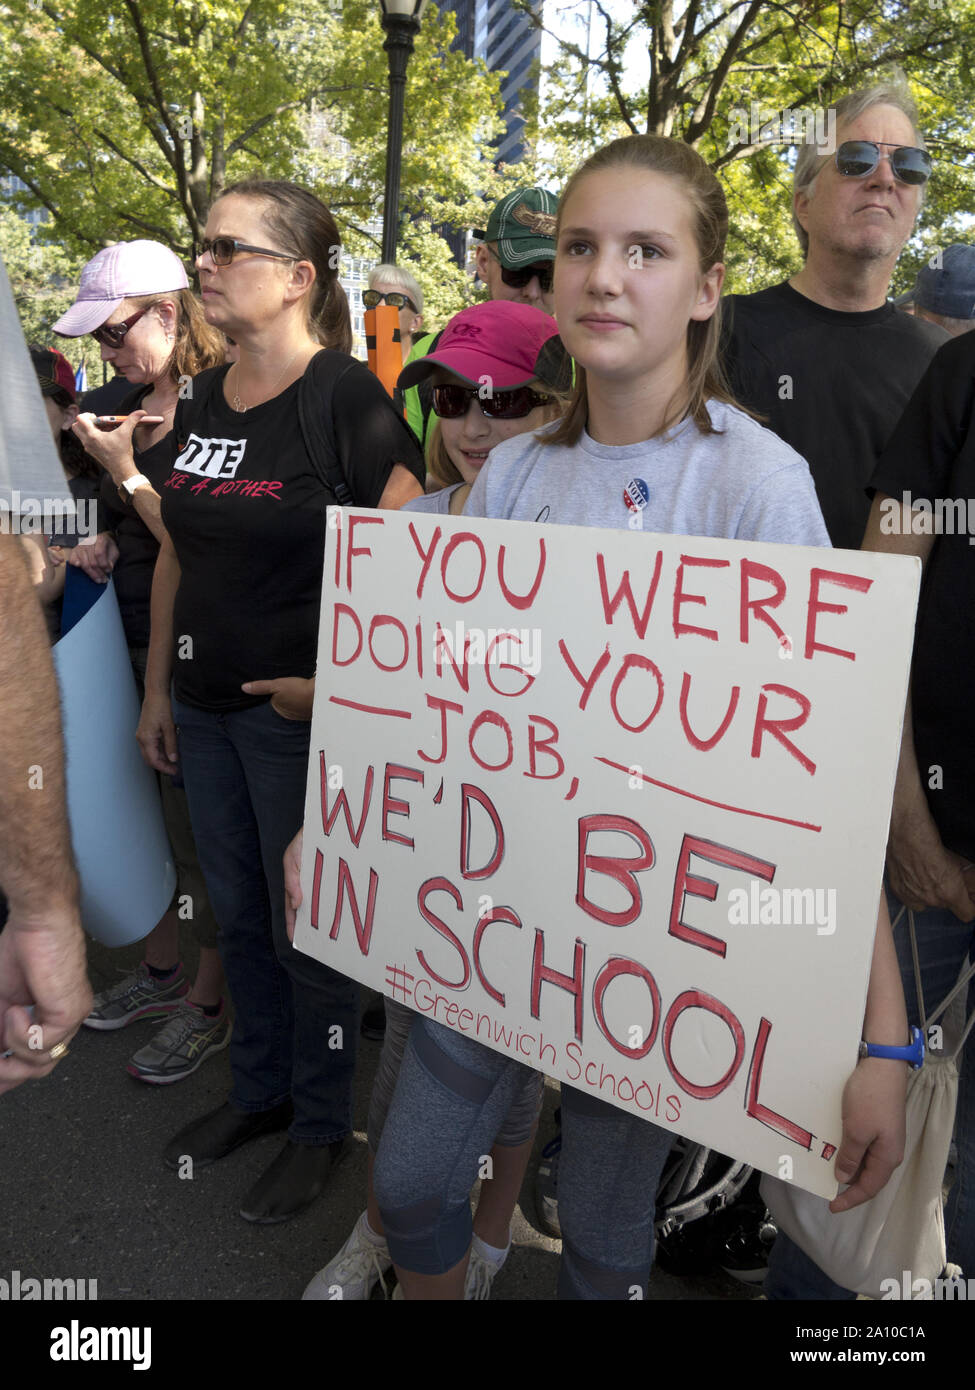 New York City, USA. 20th settembre 2019, colpo sul clima. L’adolescente sostiene un segnale che spinge i politici ad attuare la legislazione sul clima. Foto Stock